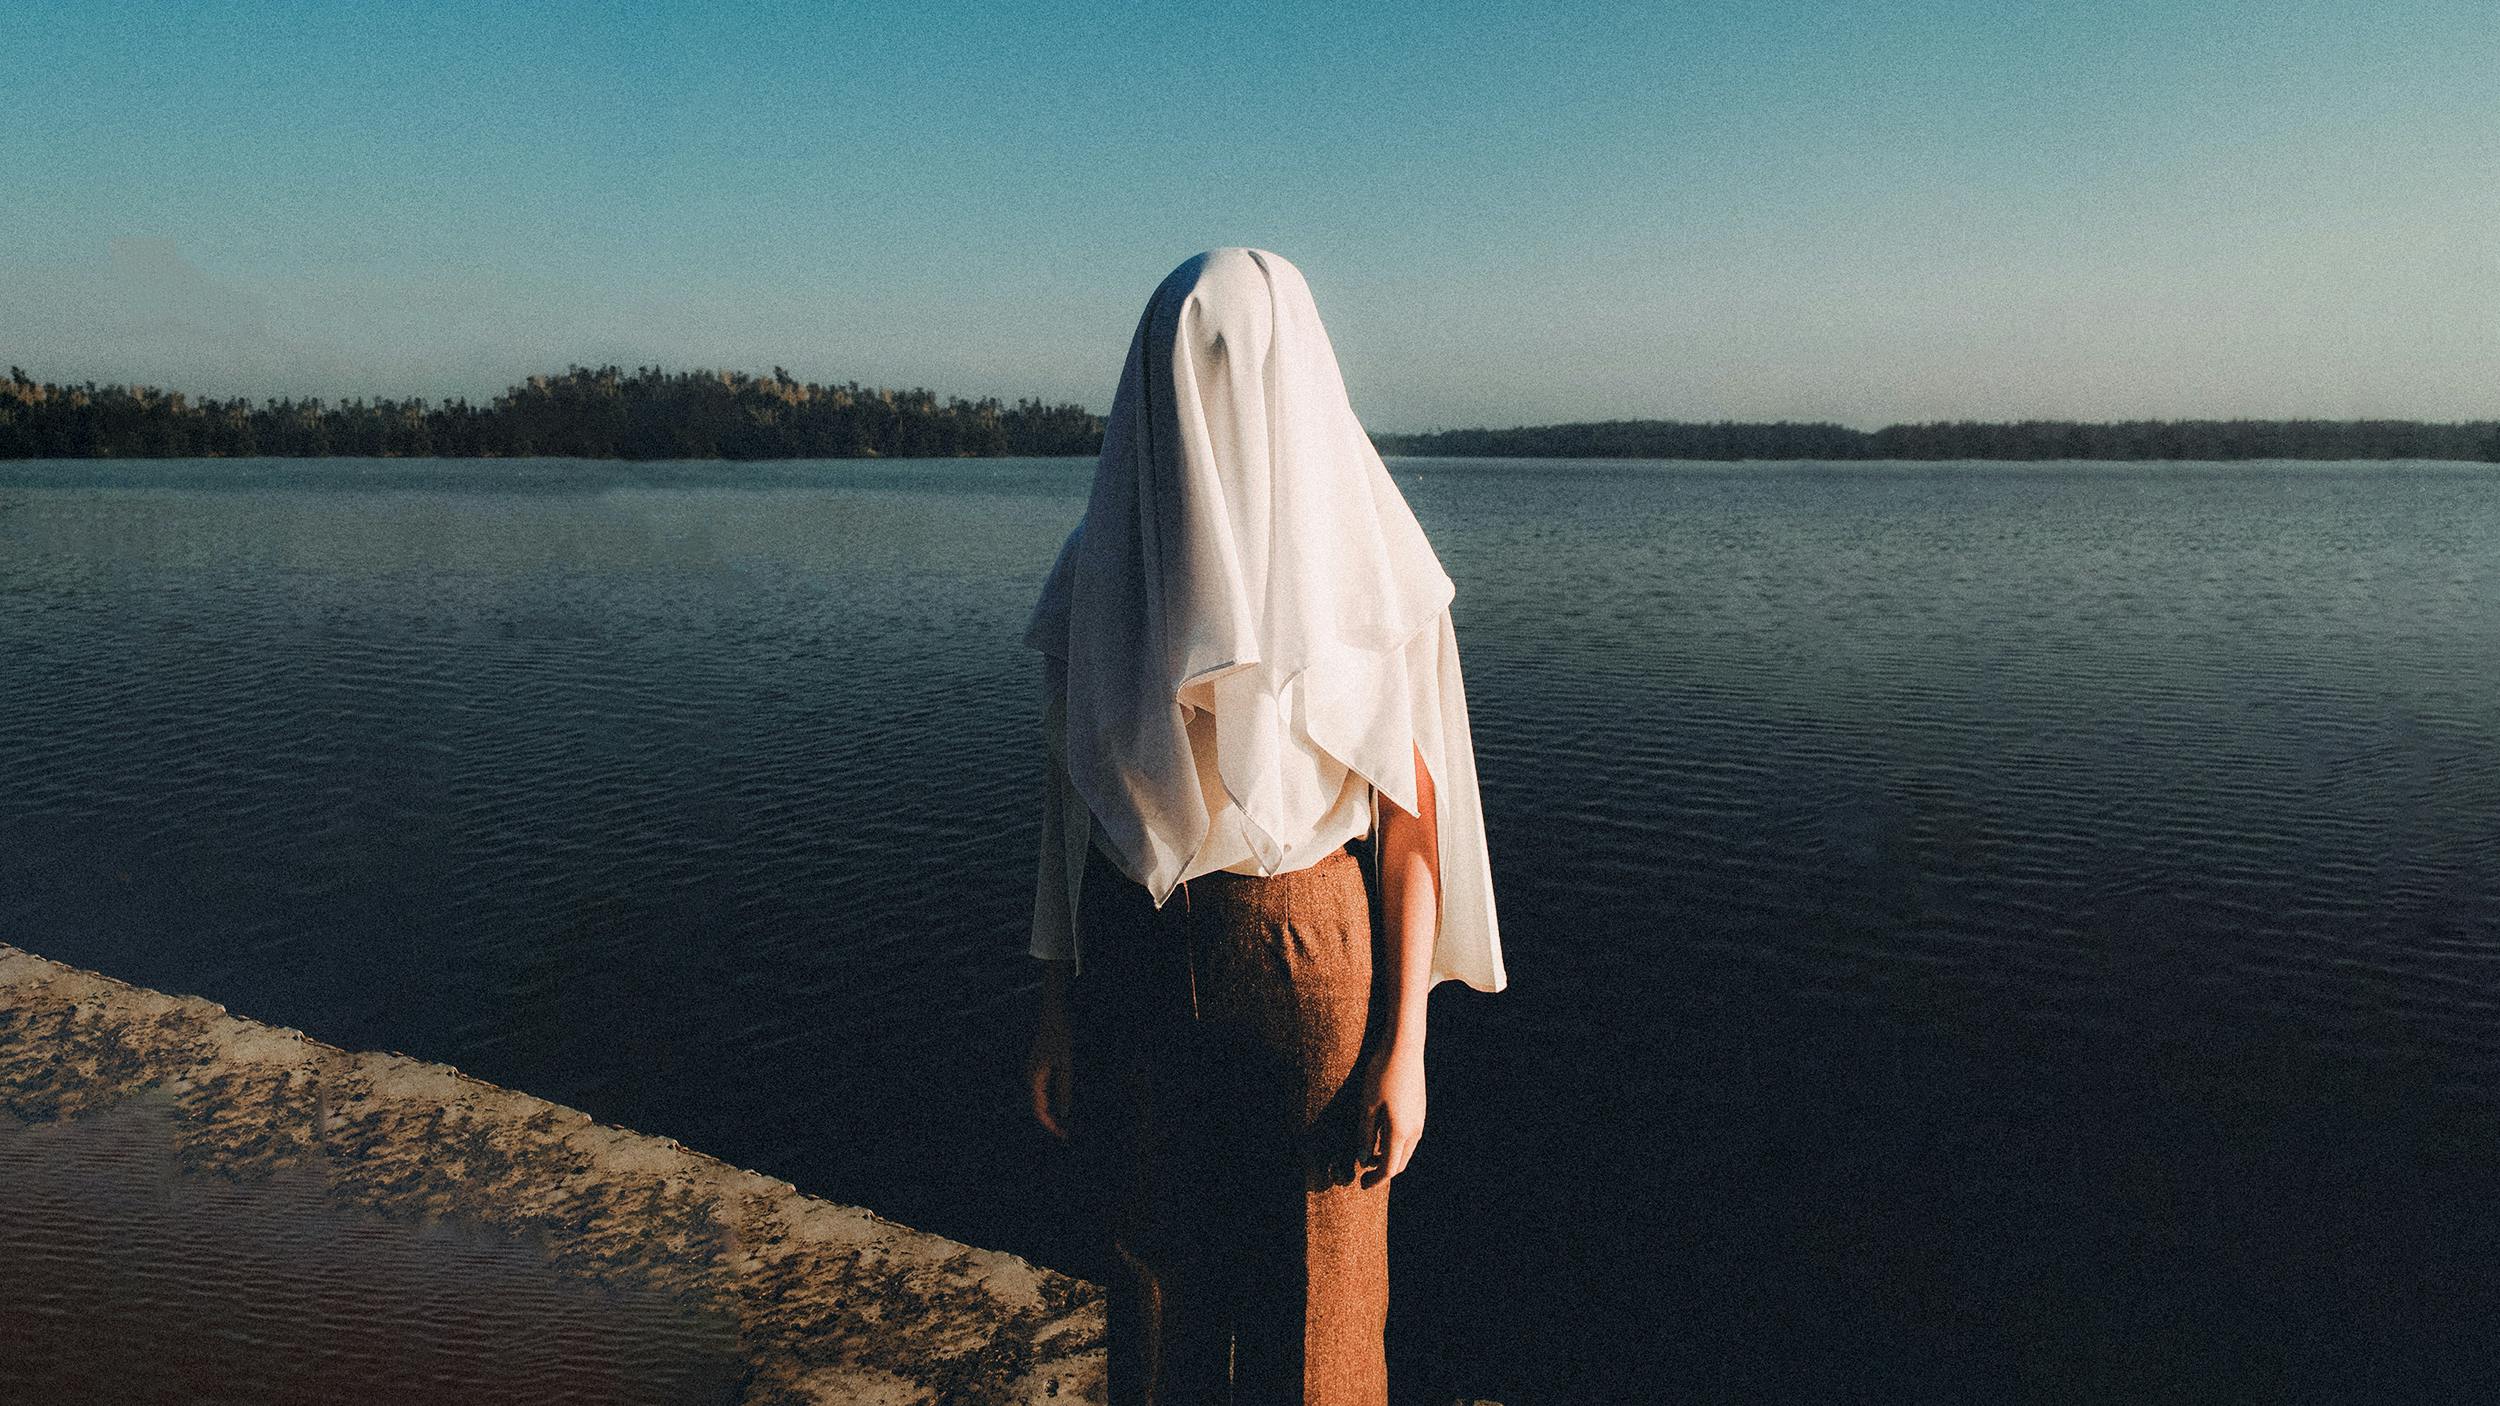 Eine Person steht am Strand eines Sees, über ihrem Kopf liegt ein Laken, dass den Kopf verdeckt.